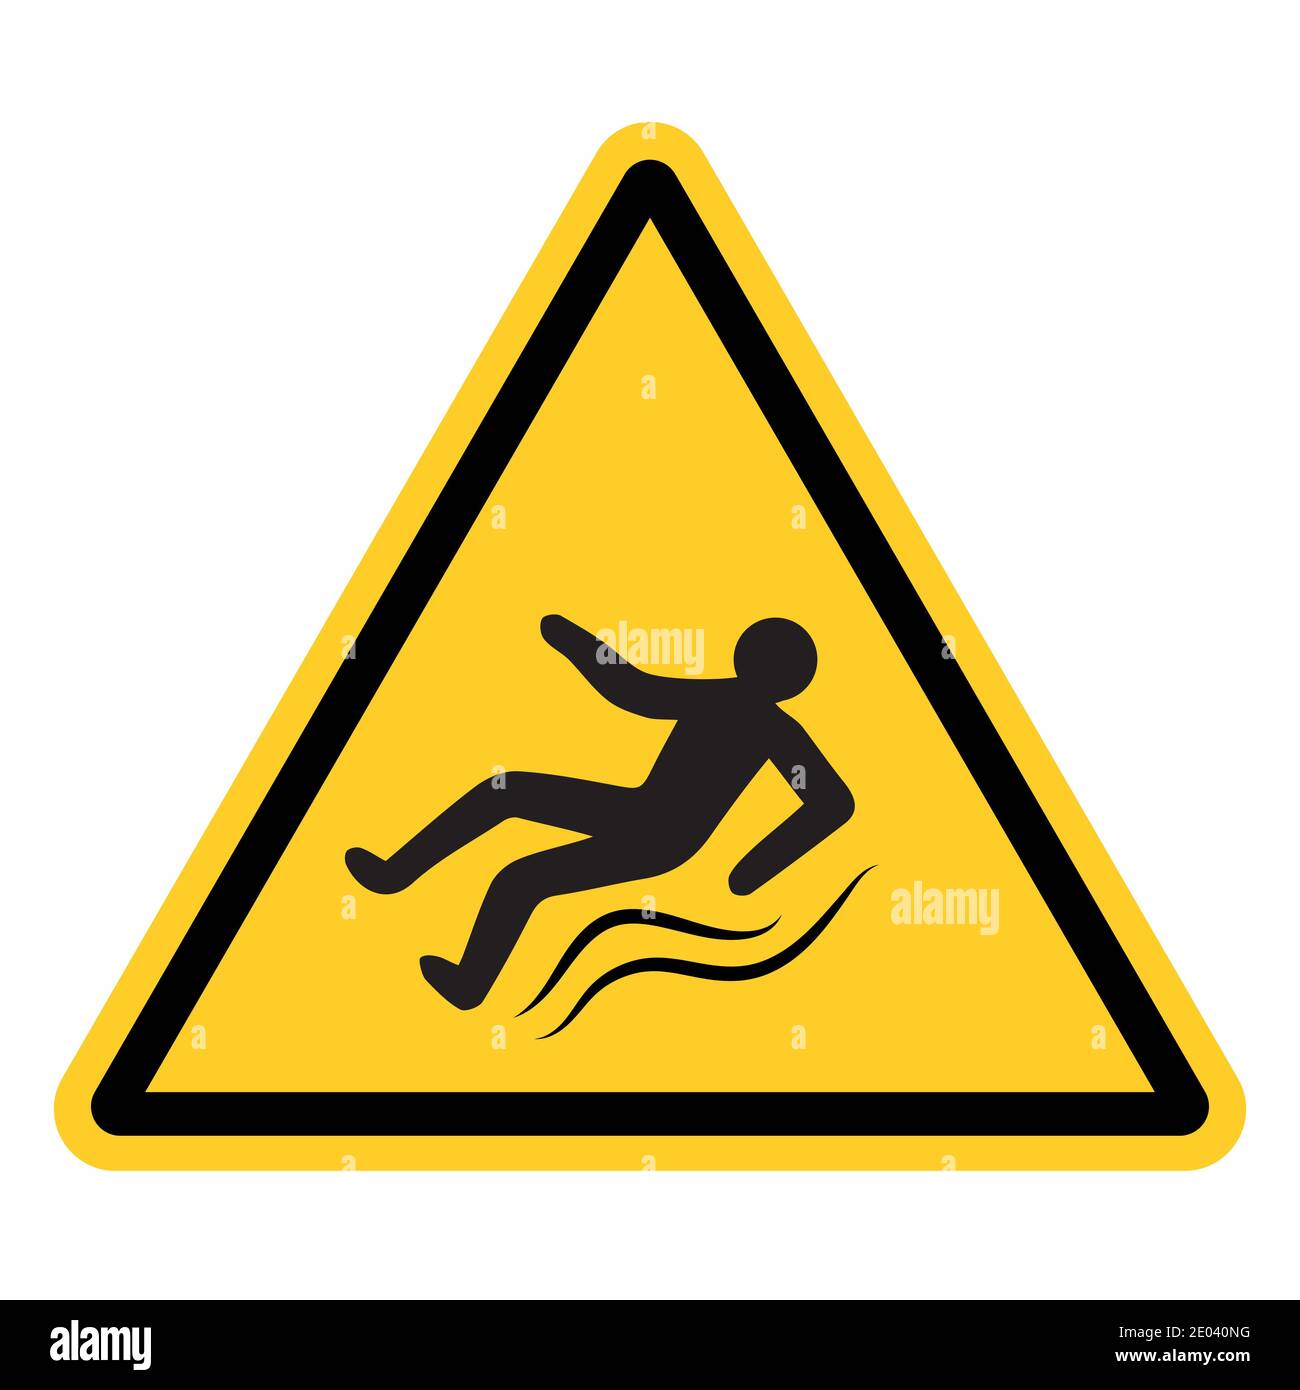 Gelbes Warnschild mit fallender rutschender Person, Vektorzeichen von Eis, rutschige Straße, Gefahrenhinweise, die auf rutschigem Bürgersteig verletzt werden Stock Vektor